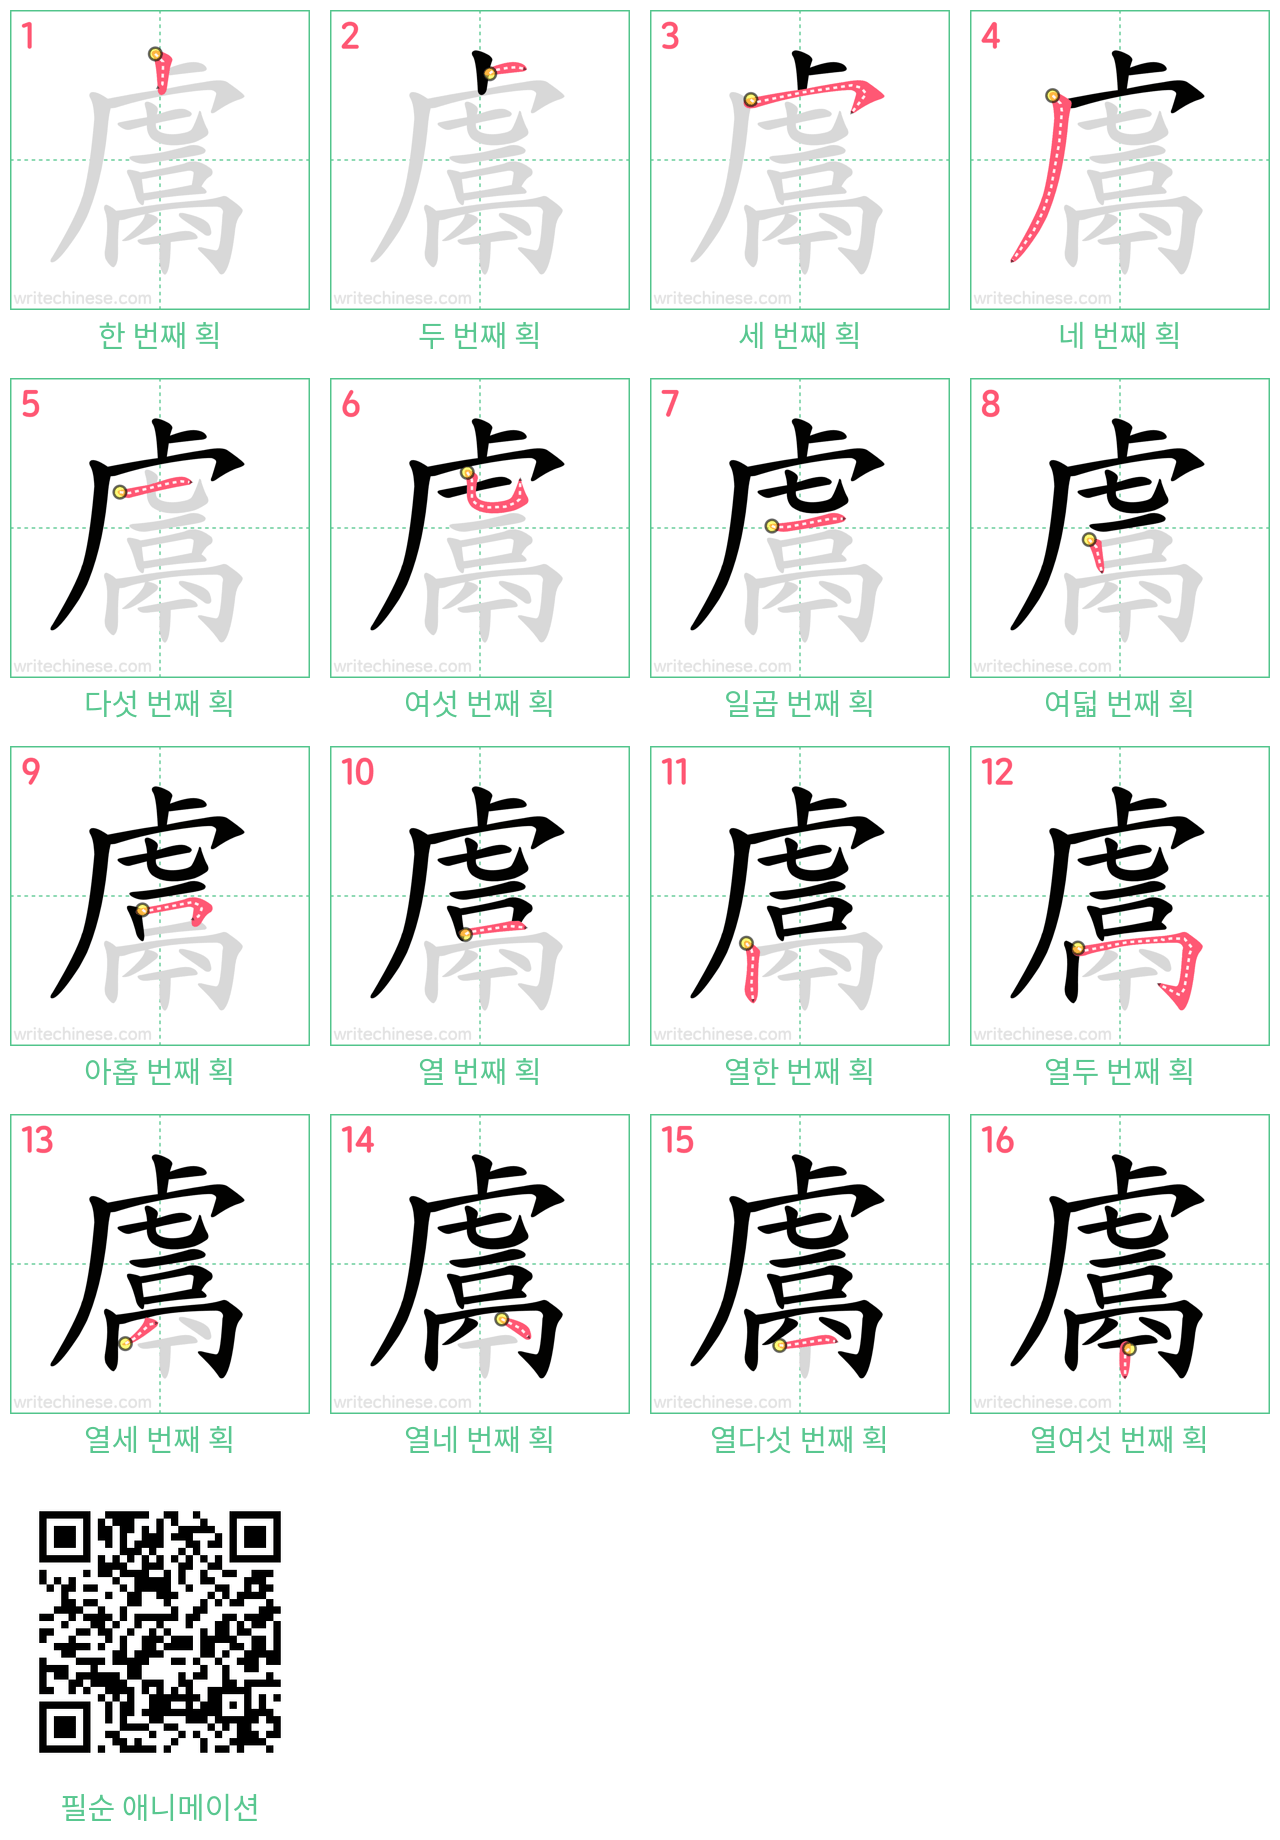 鬳 step-by-step stroke order diagrams